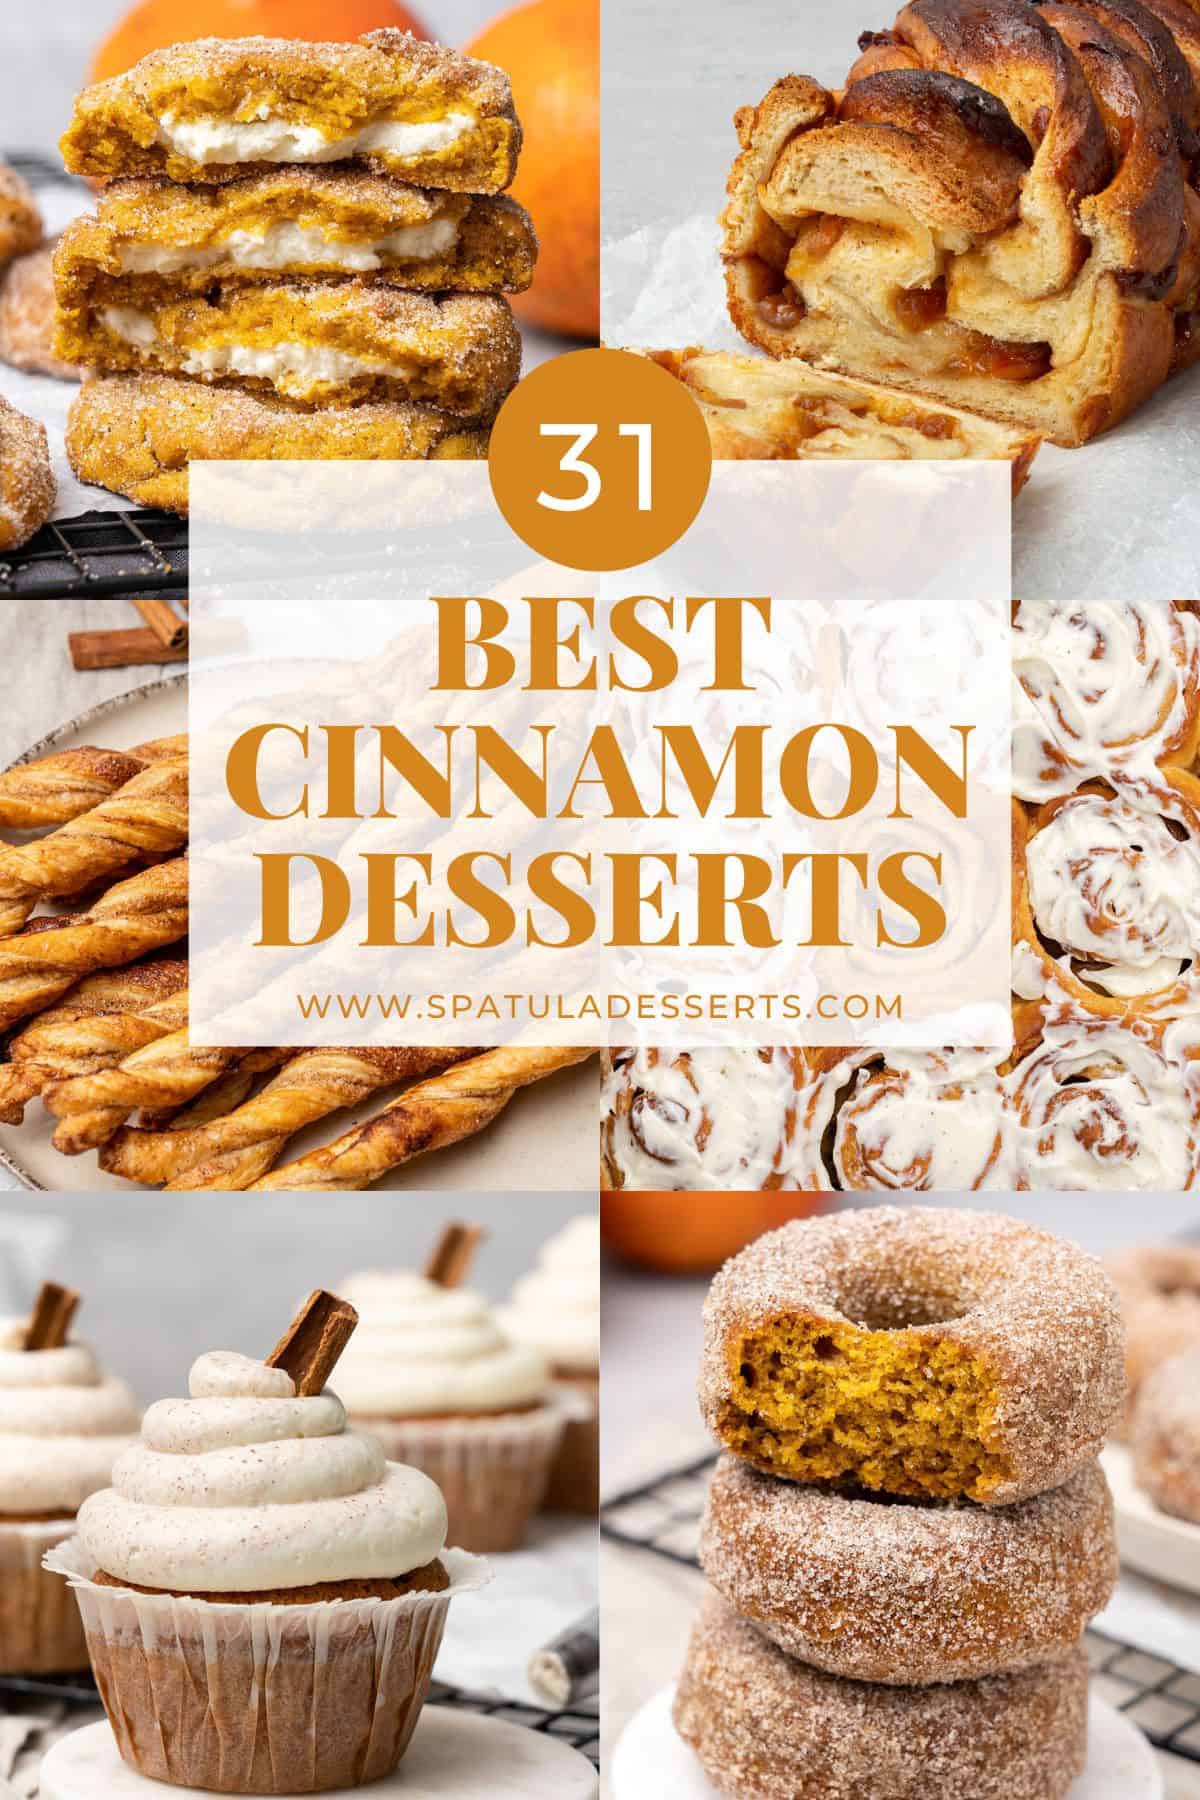 Best Cinnamon Desserts collection.